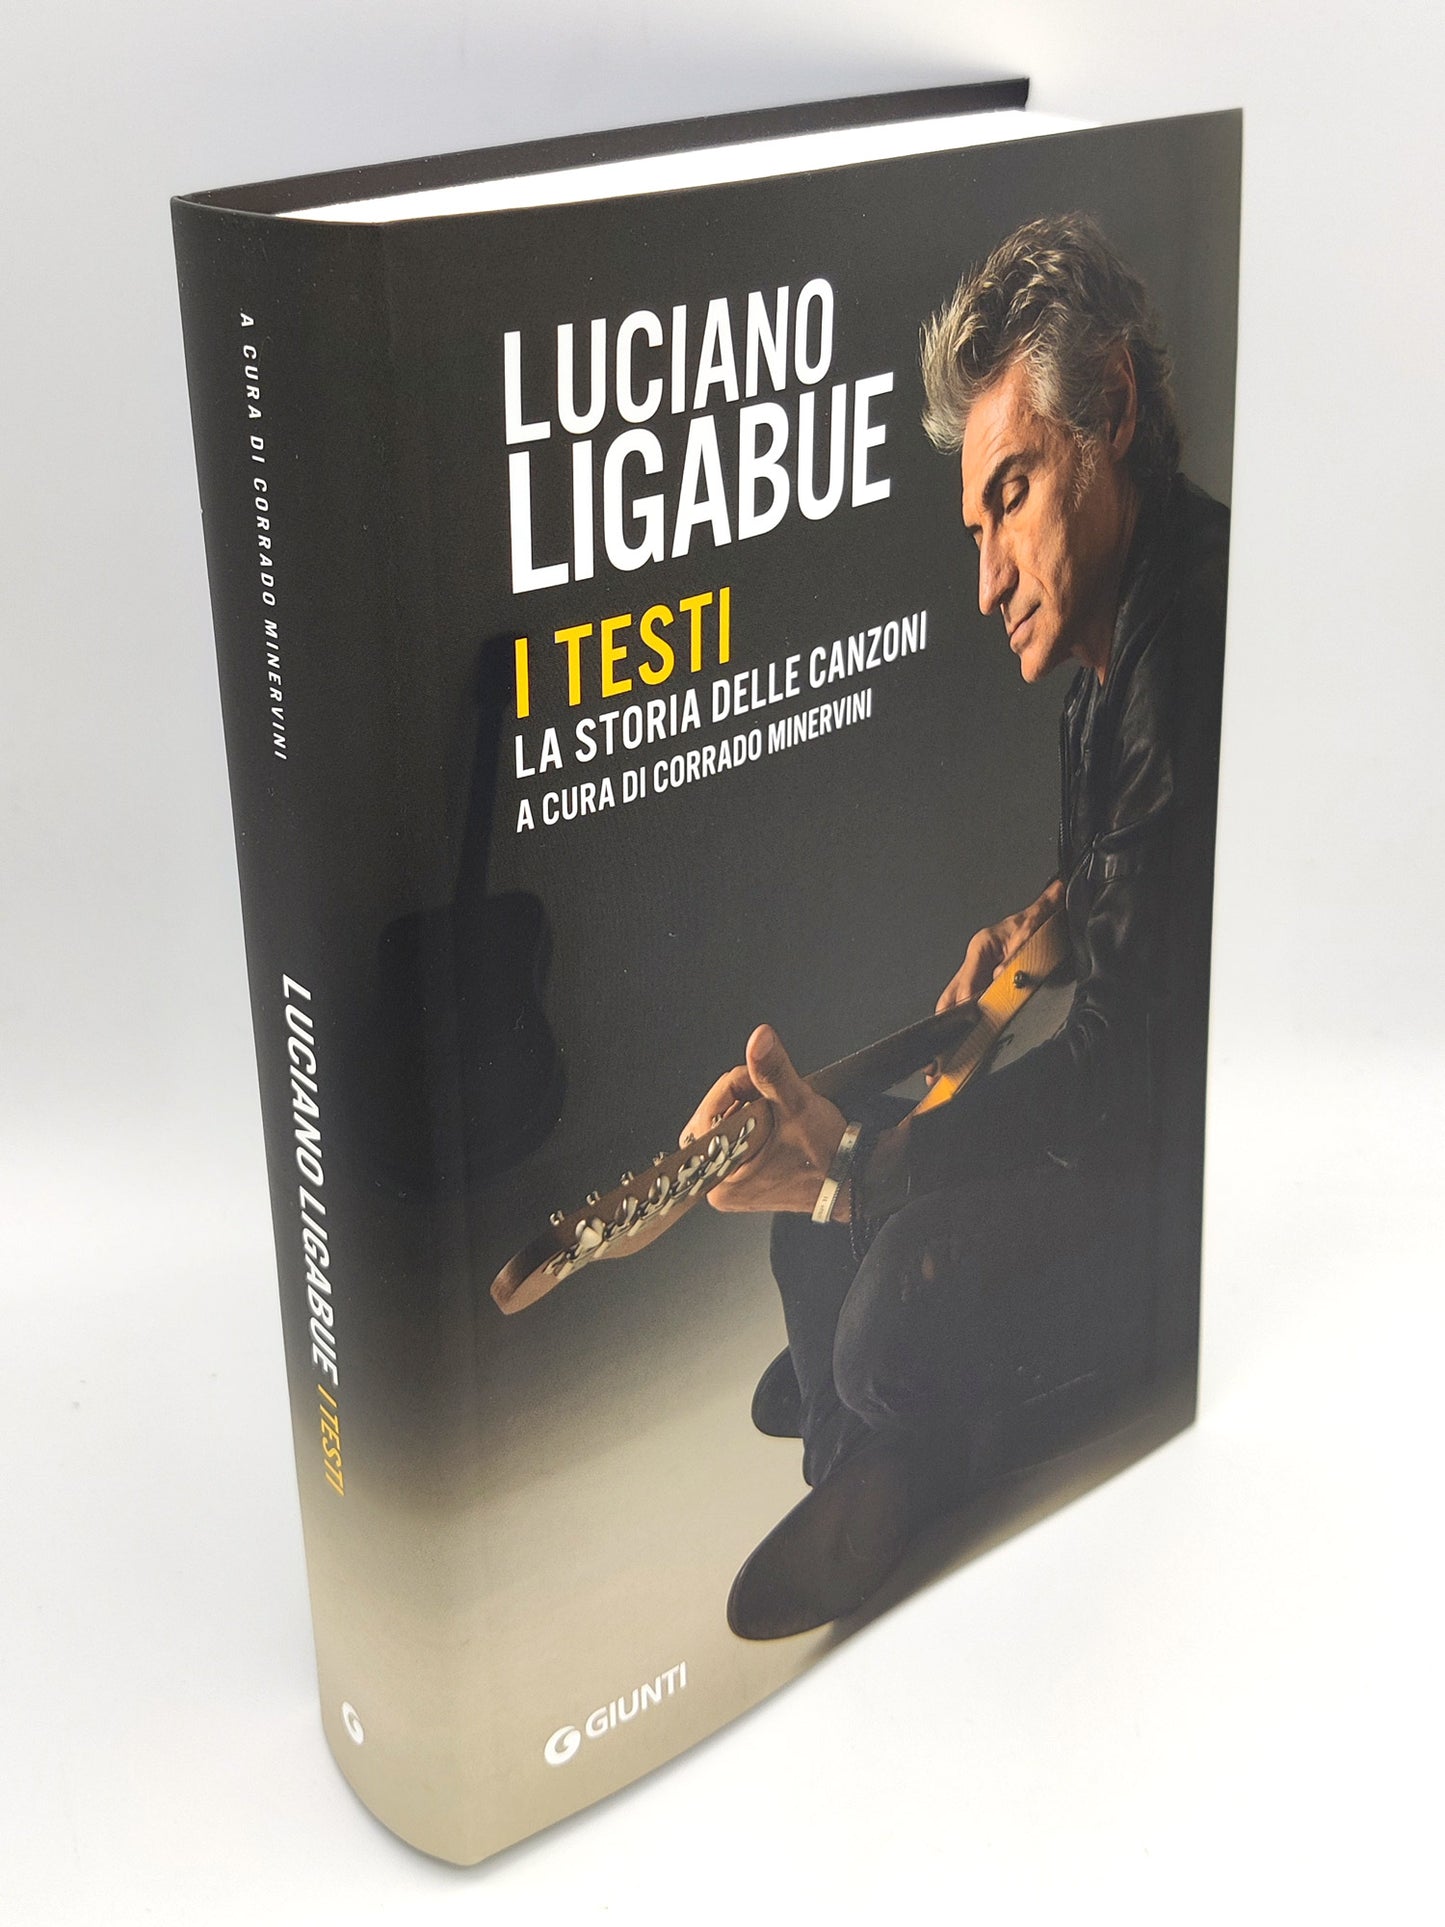 Luciano Ligabue::I testi. La storia delle canzoni